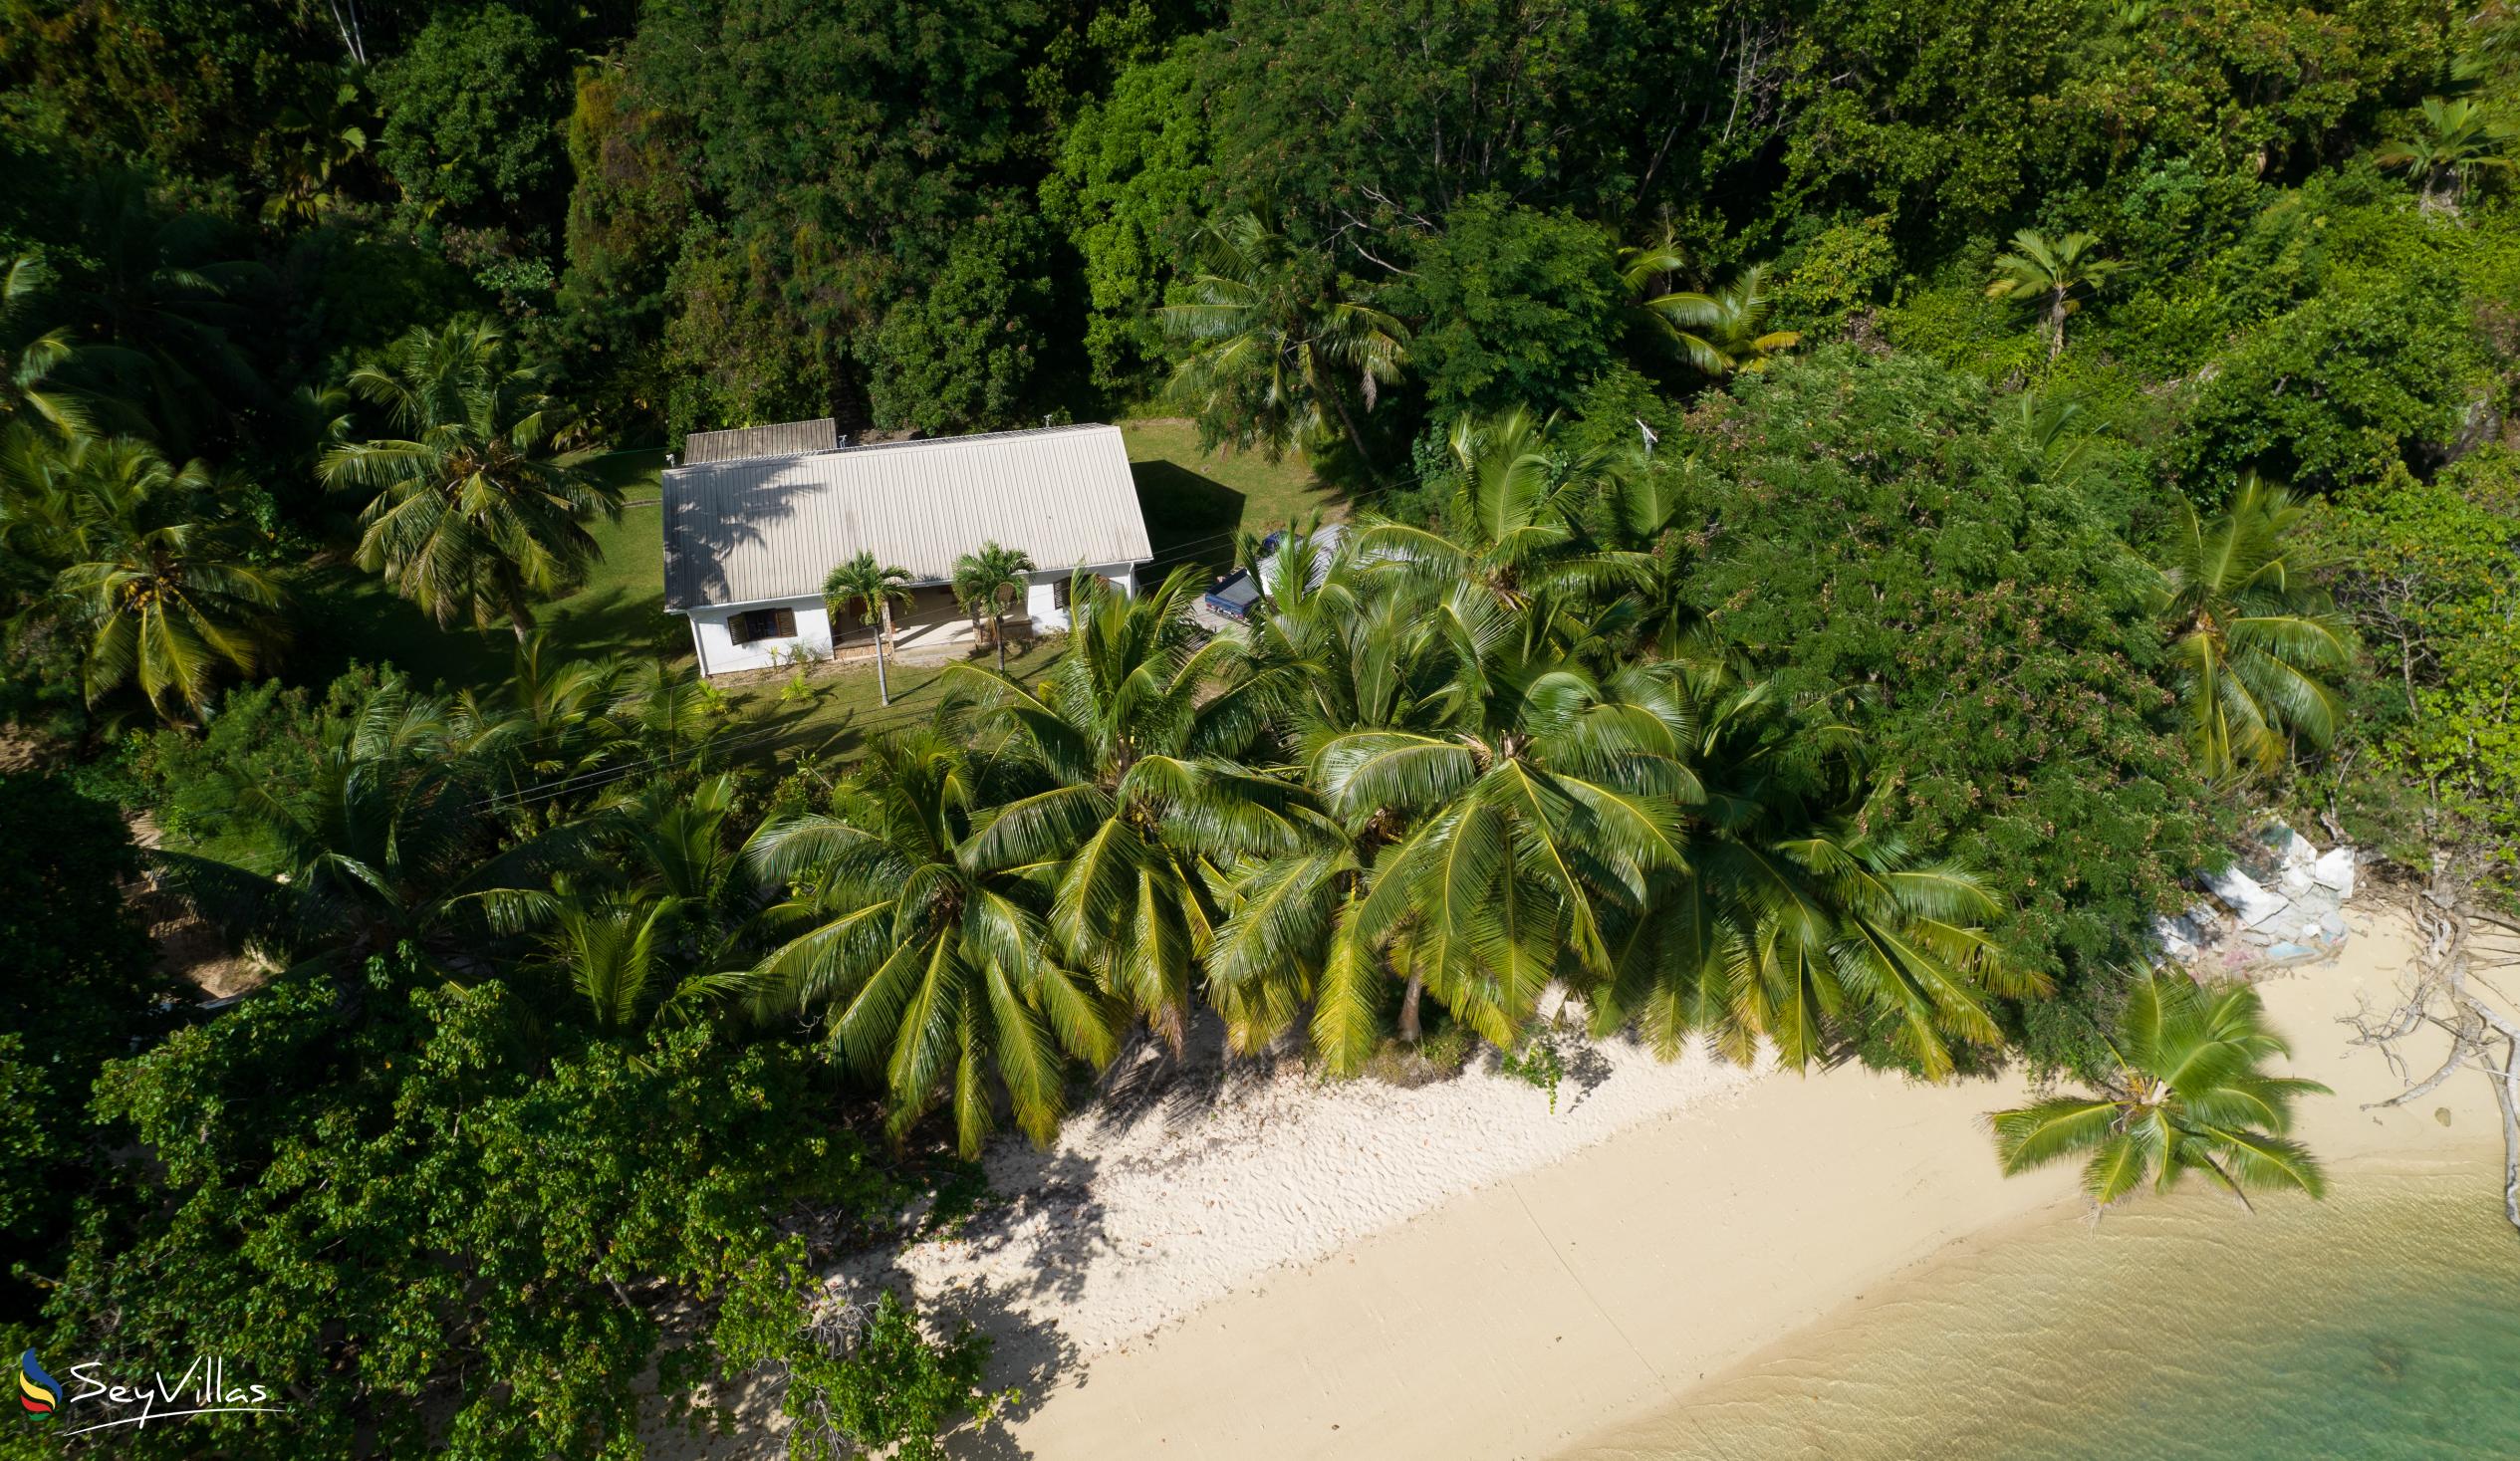 Foto 2: Villa Zananas - Aussenbereich - Praslin (Seychellen)